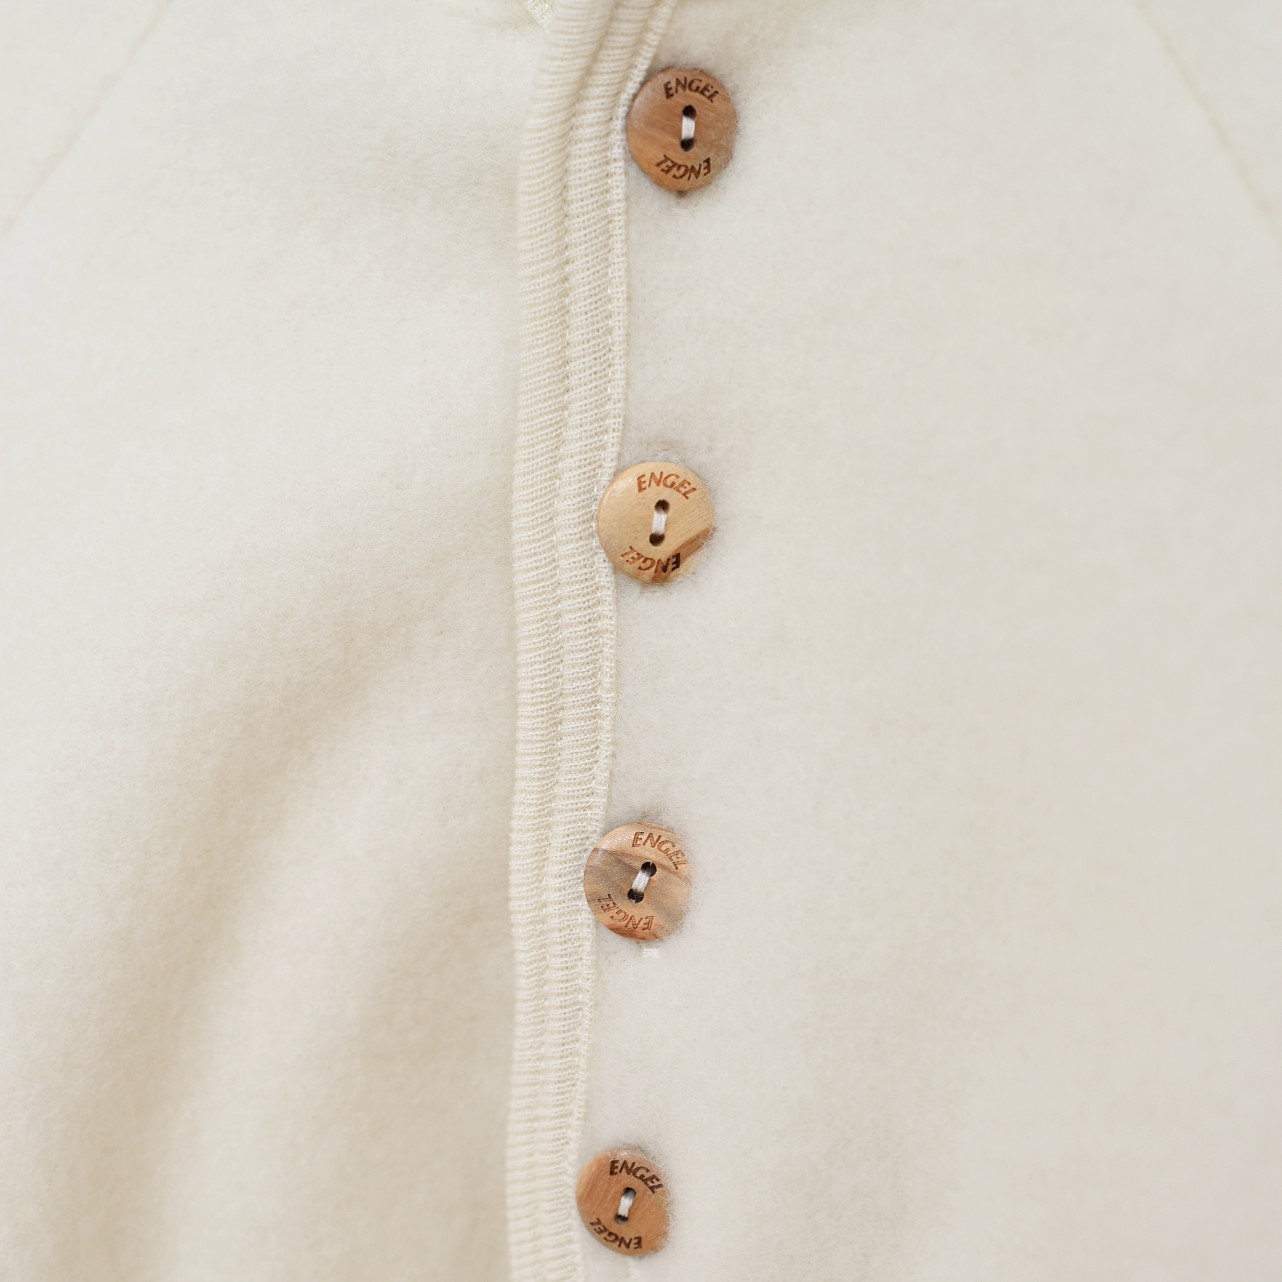 Engel 100% laine mérinos bébé Veste à capuche boutons rayures manteau pull sweater 